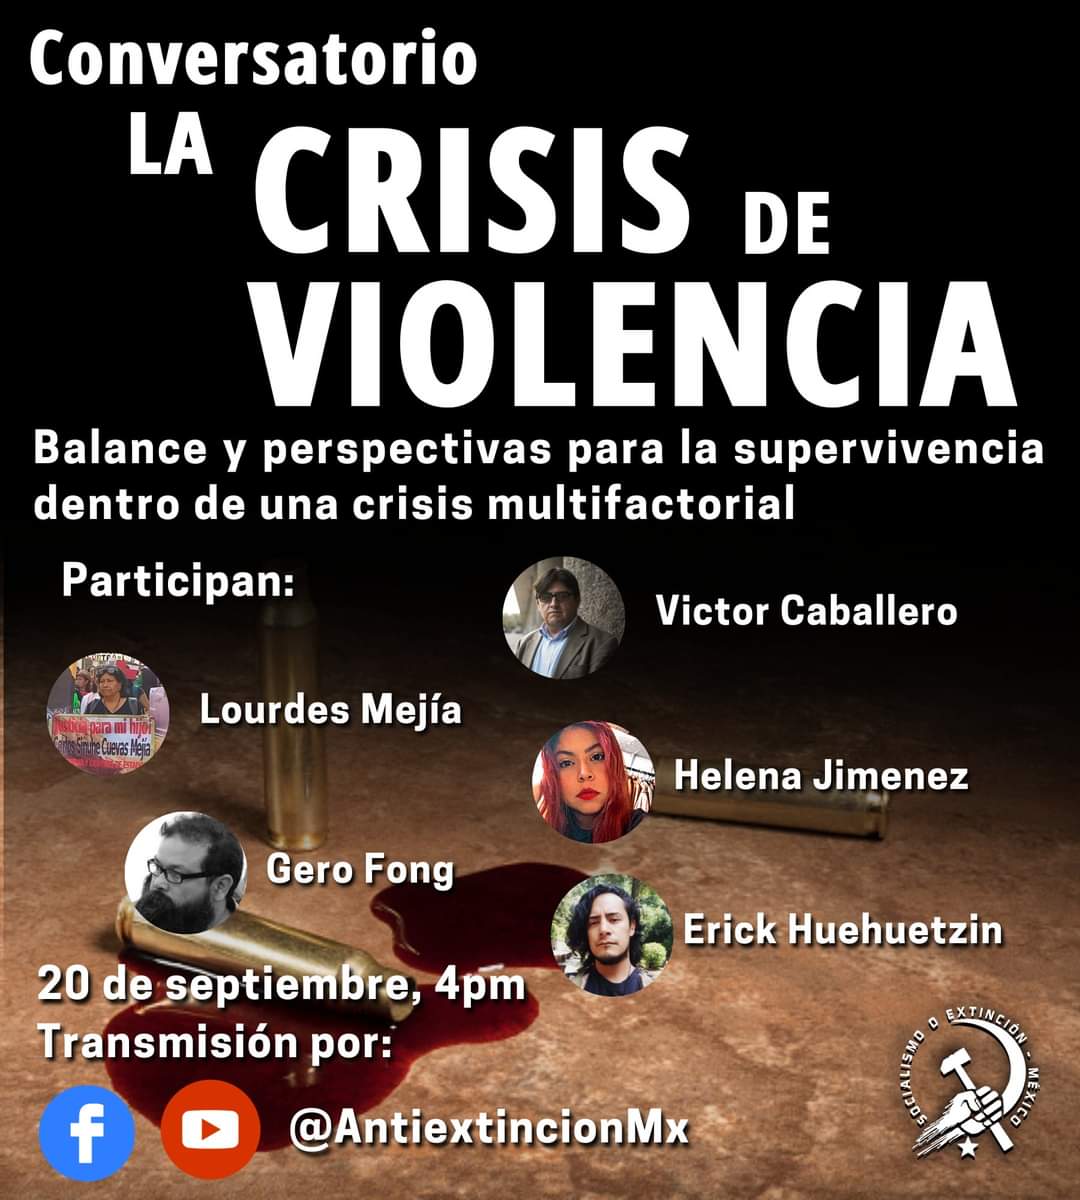 Te invitamos a nuestro #conversatorio sobre la #CrisisDeViolencia en #México. ¿Cómo se define la situación de violencia en el país y qué hacer?
#Militarización #desapariciones #Inseguridad #autodefensa #ViolenciaDeGénero #seguridadcomunitaria #Justiciapopular #Socialismooxtinción